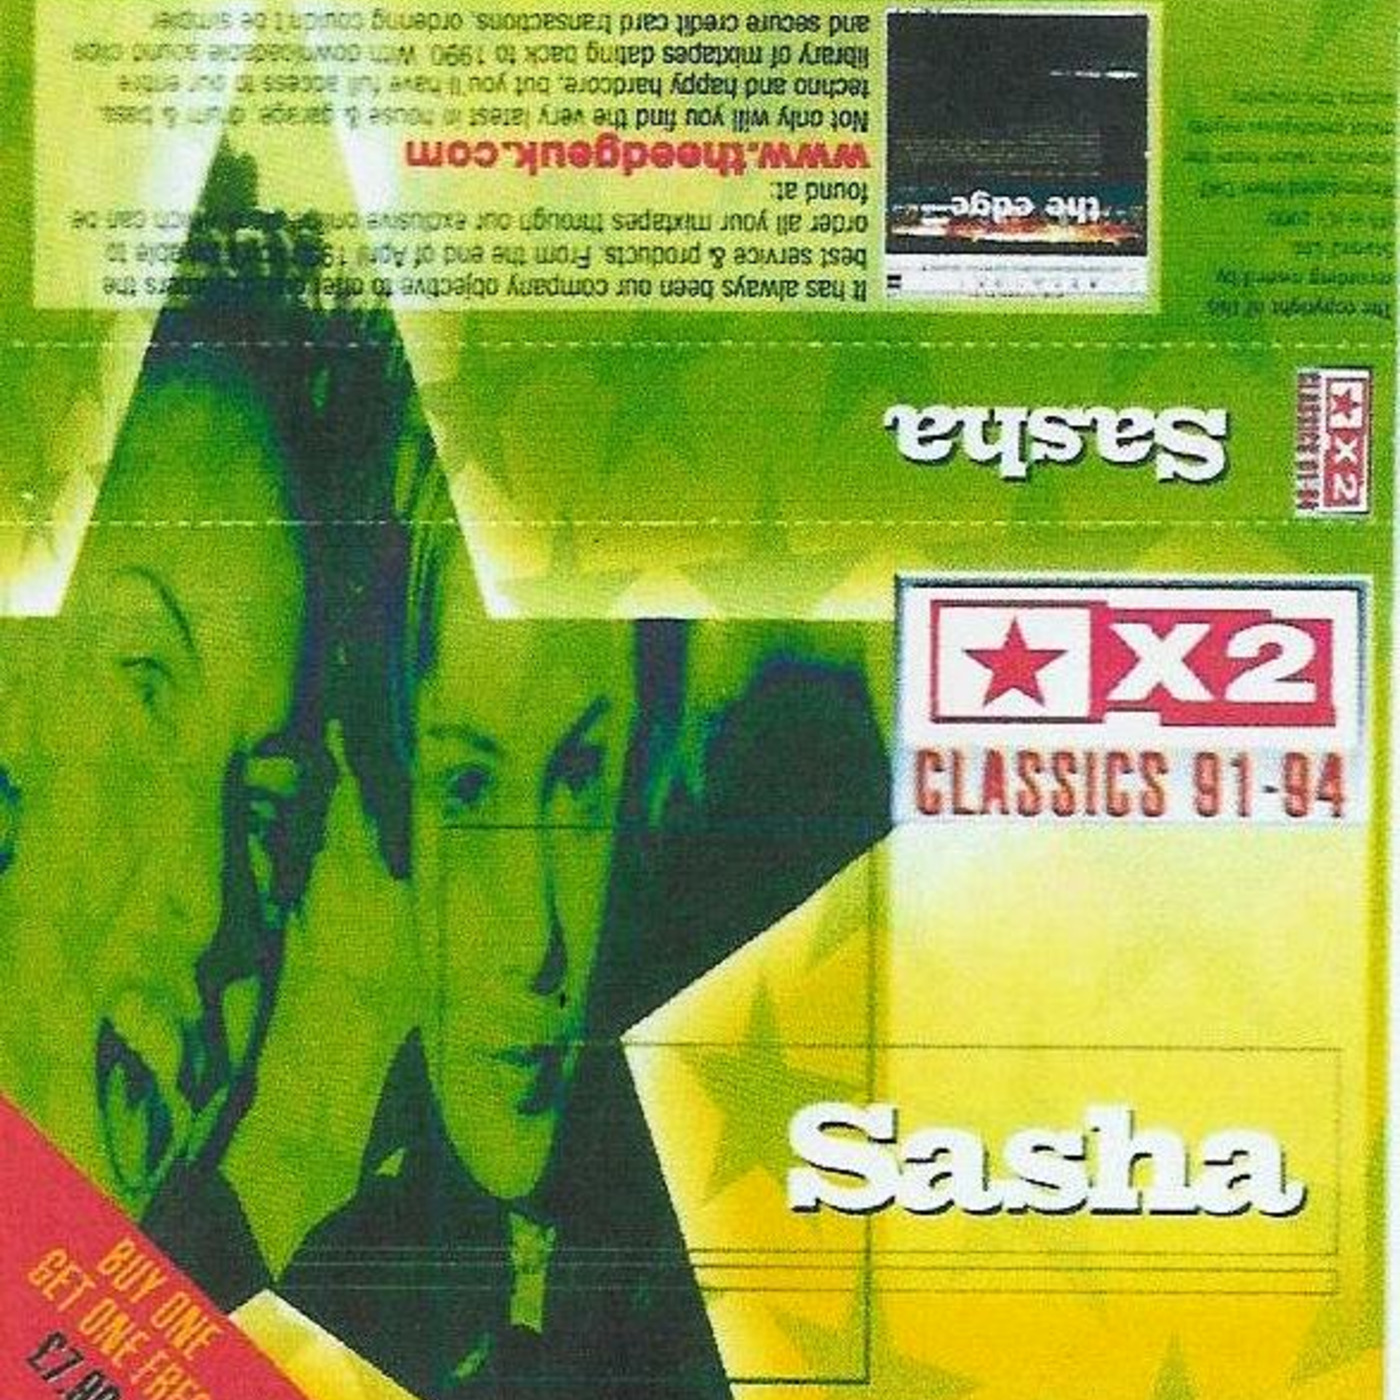 (2000) Sasha - Stars X2 [Classics 91.94]